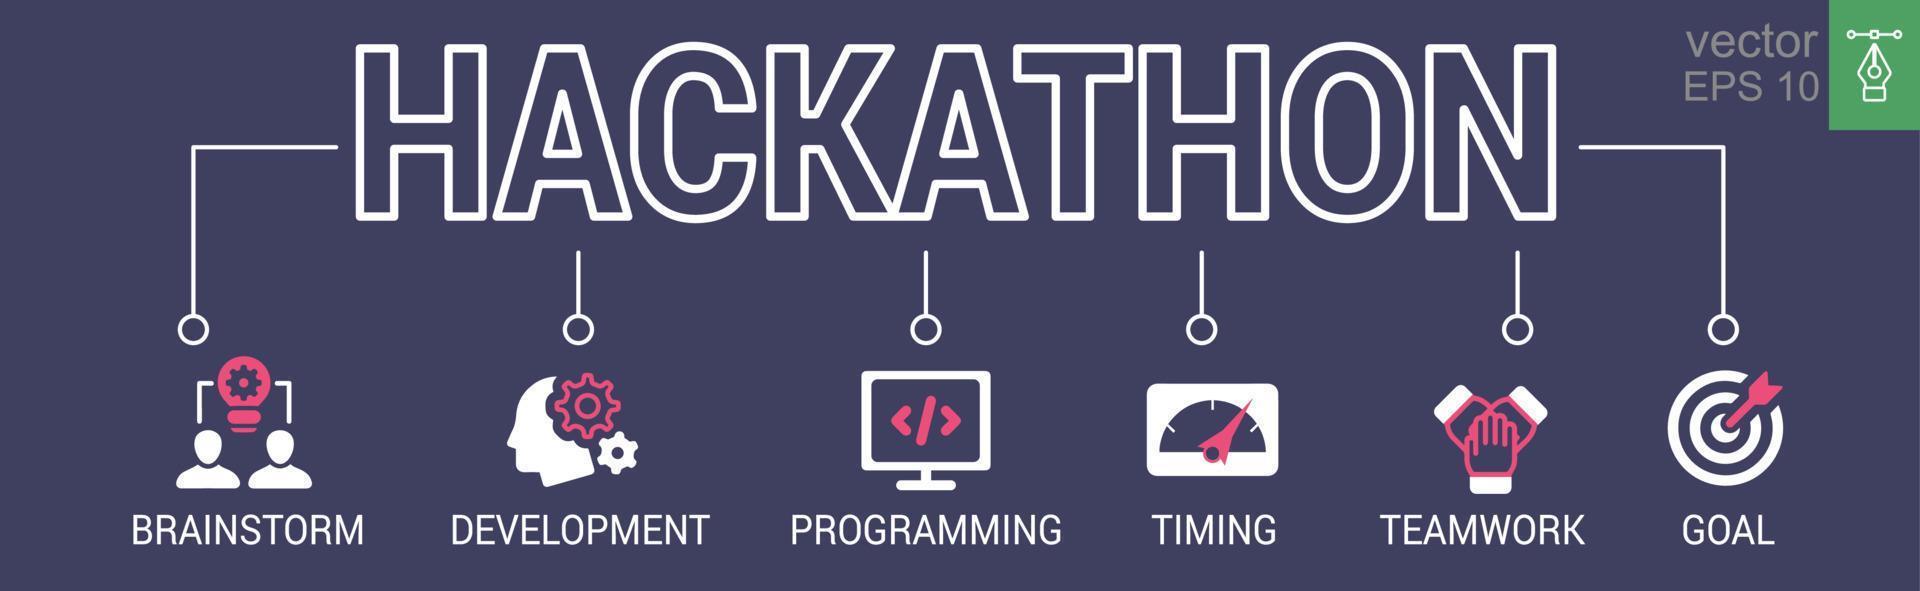 hackathon ontwerp sprint-achtig evenement spandoek. uitdaging, programmeren, idee, online, strategie, technologie. vector illustratie concept met trefwoorden en pictogrammen. eps 10.